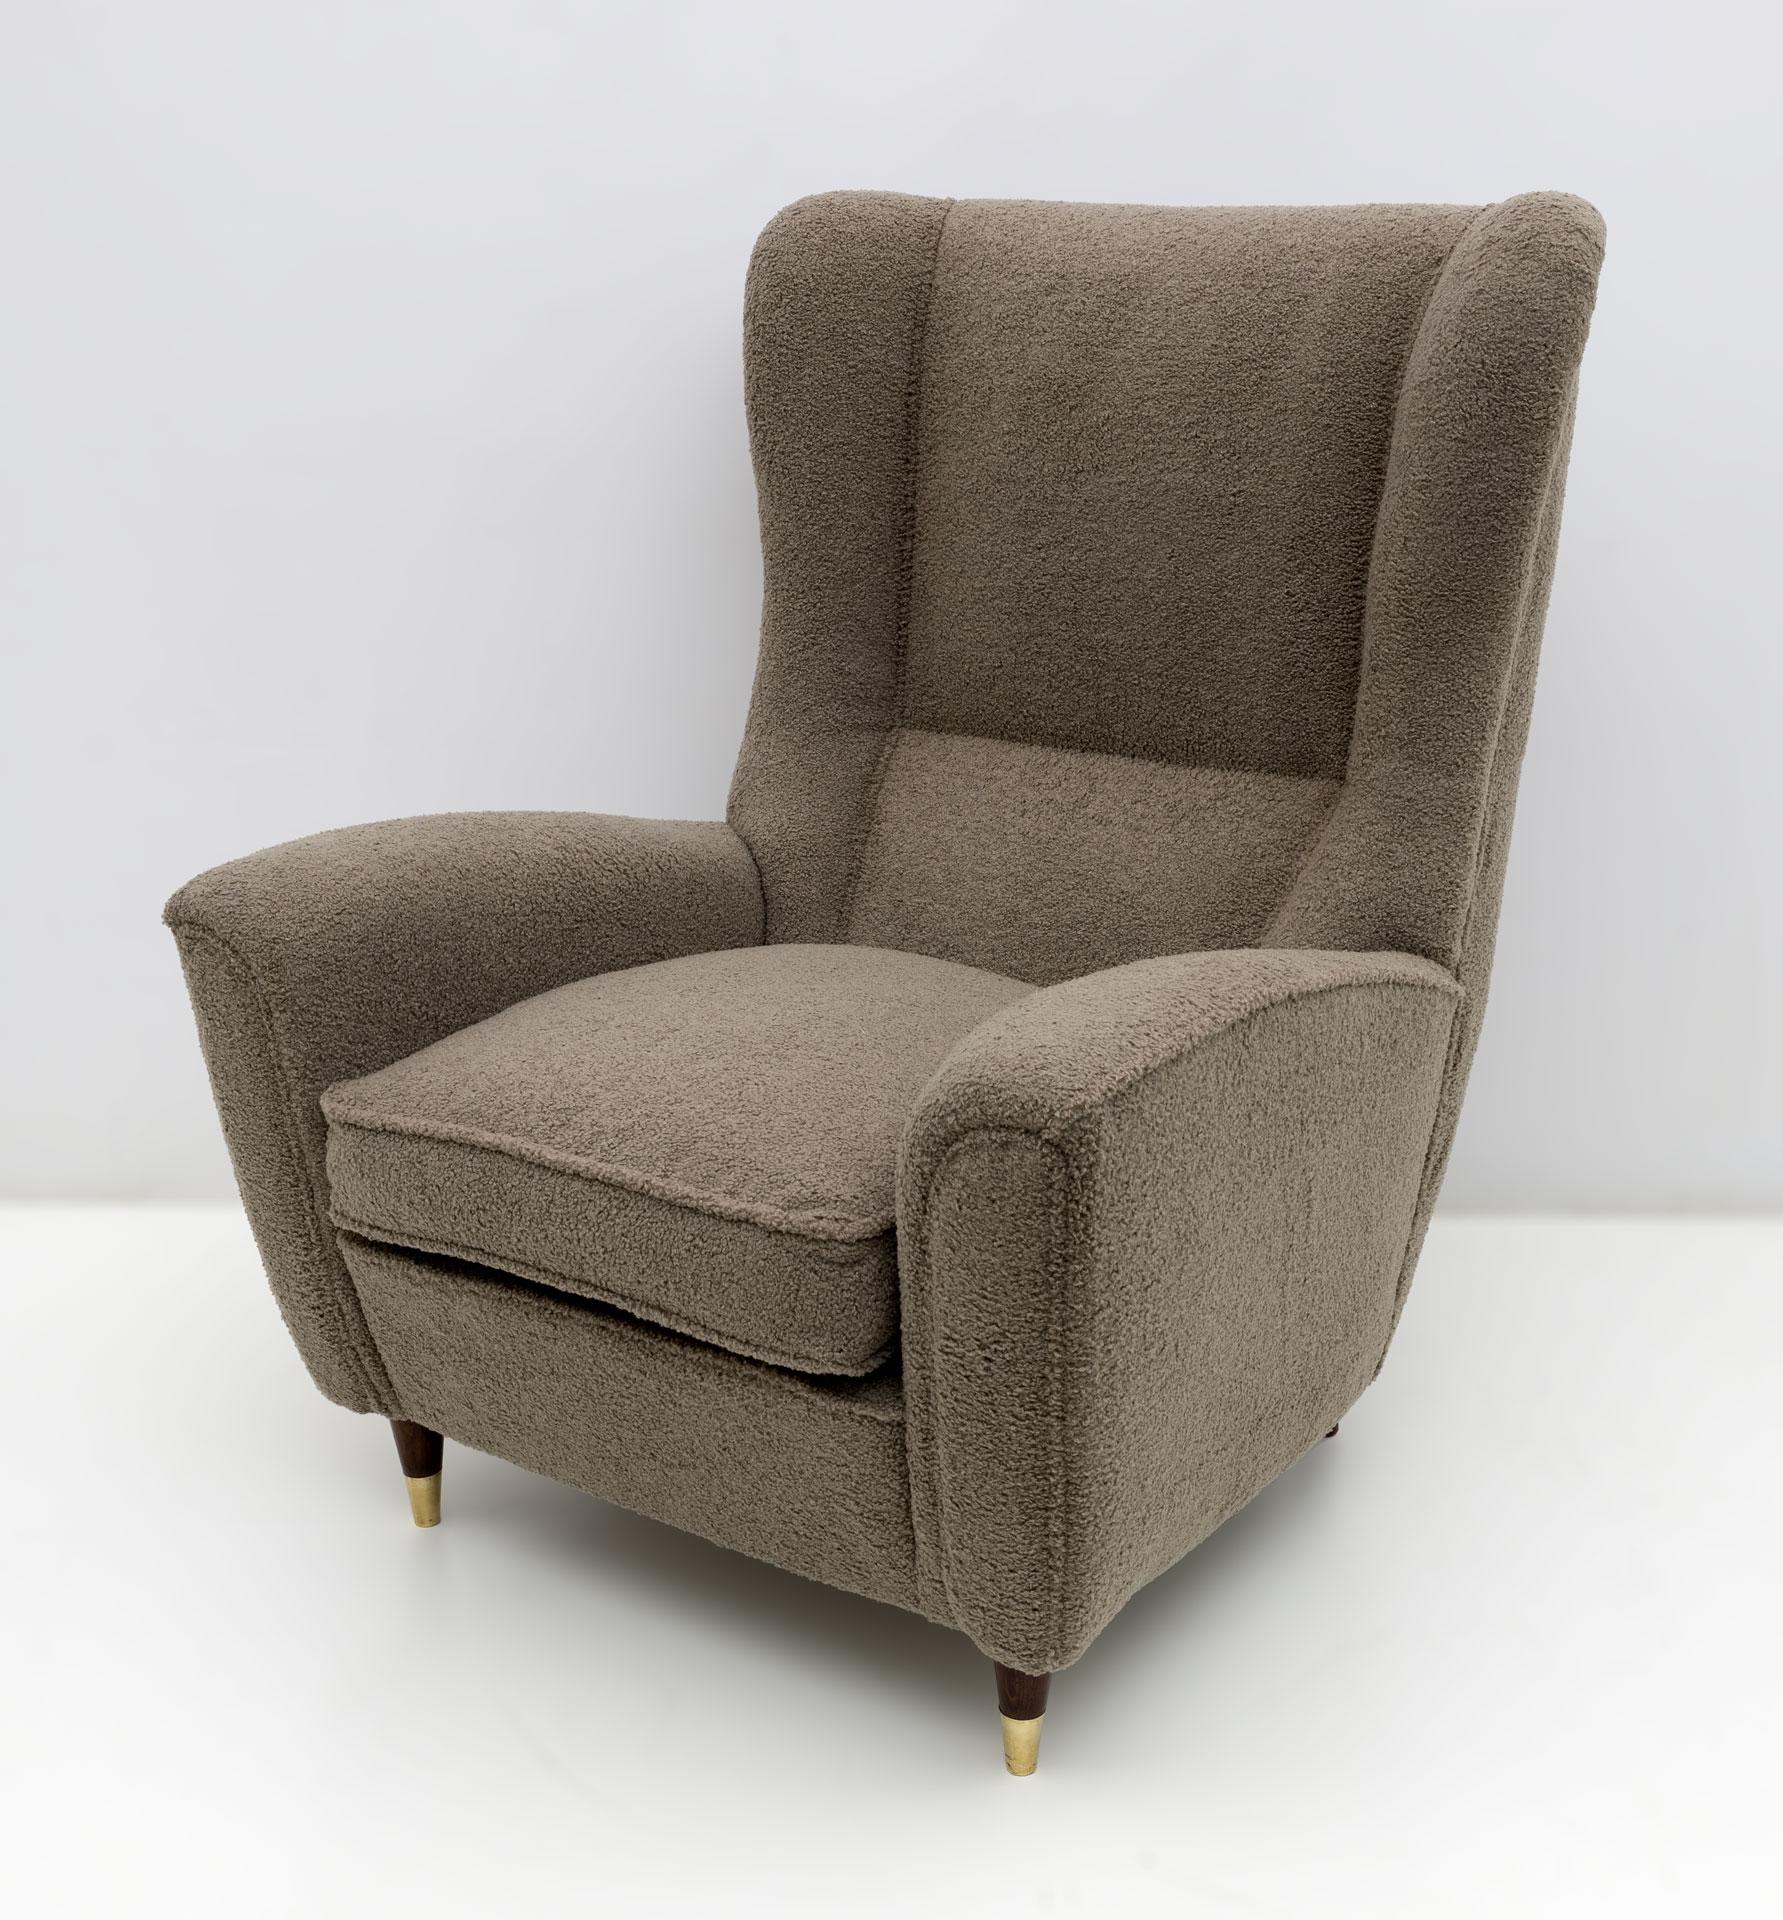 Ce fauteuil dans le style de Gio Ponti a été produit par la célèbre entreprise italienne Isa de Bergame, où Gio Ponti a collaboré pendant plusieurs années. Haut dossier, très imposant et confortable, tapissé de fine bouclette, ce fauteuil lounge est